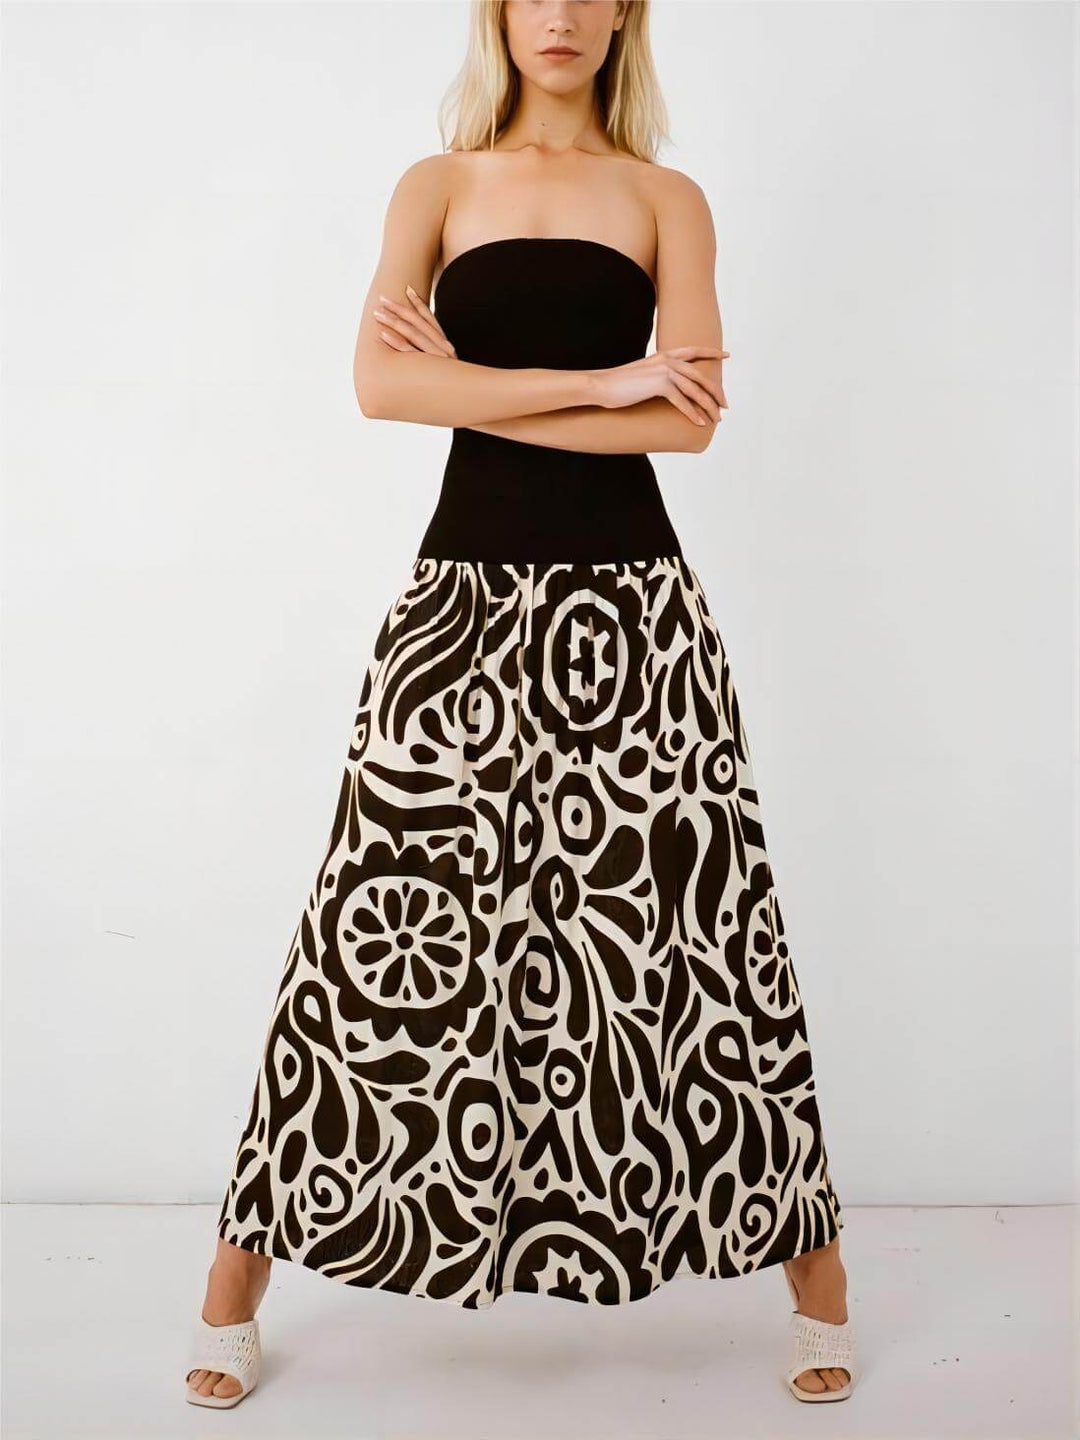 Modna sukienka maxi bez ramiączek w kwiatowy print